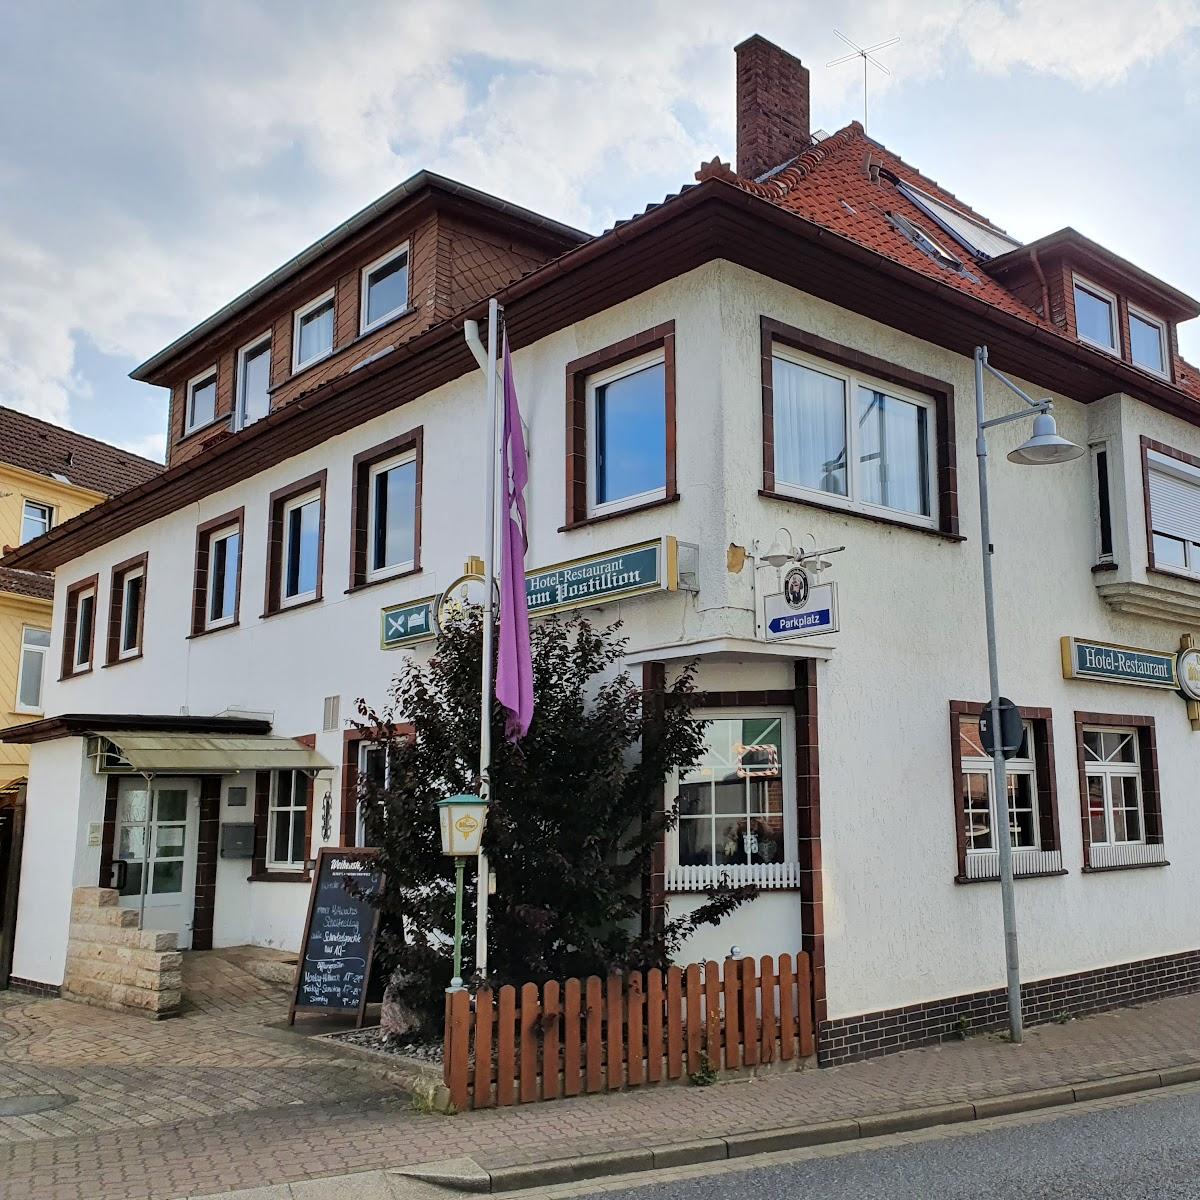 Restaurant "Hotel Restaurant Zum Postillion" in Soltau